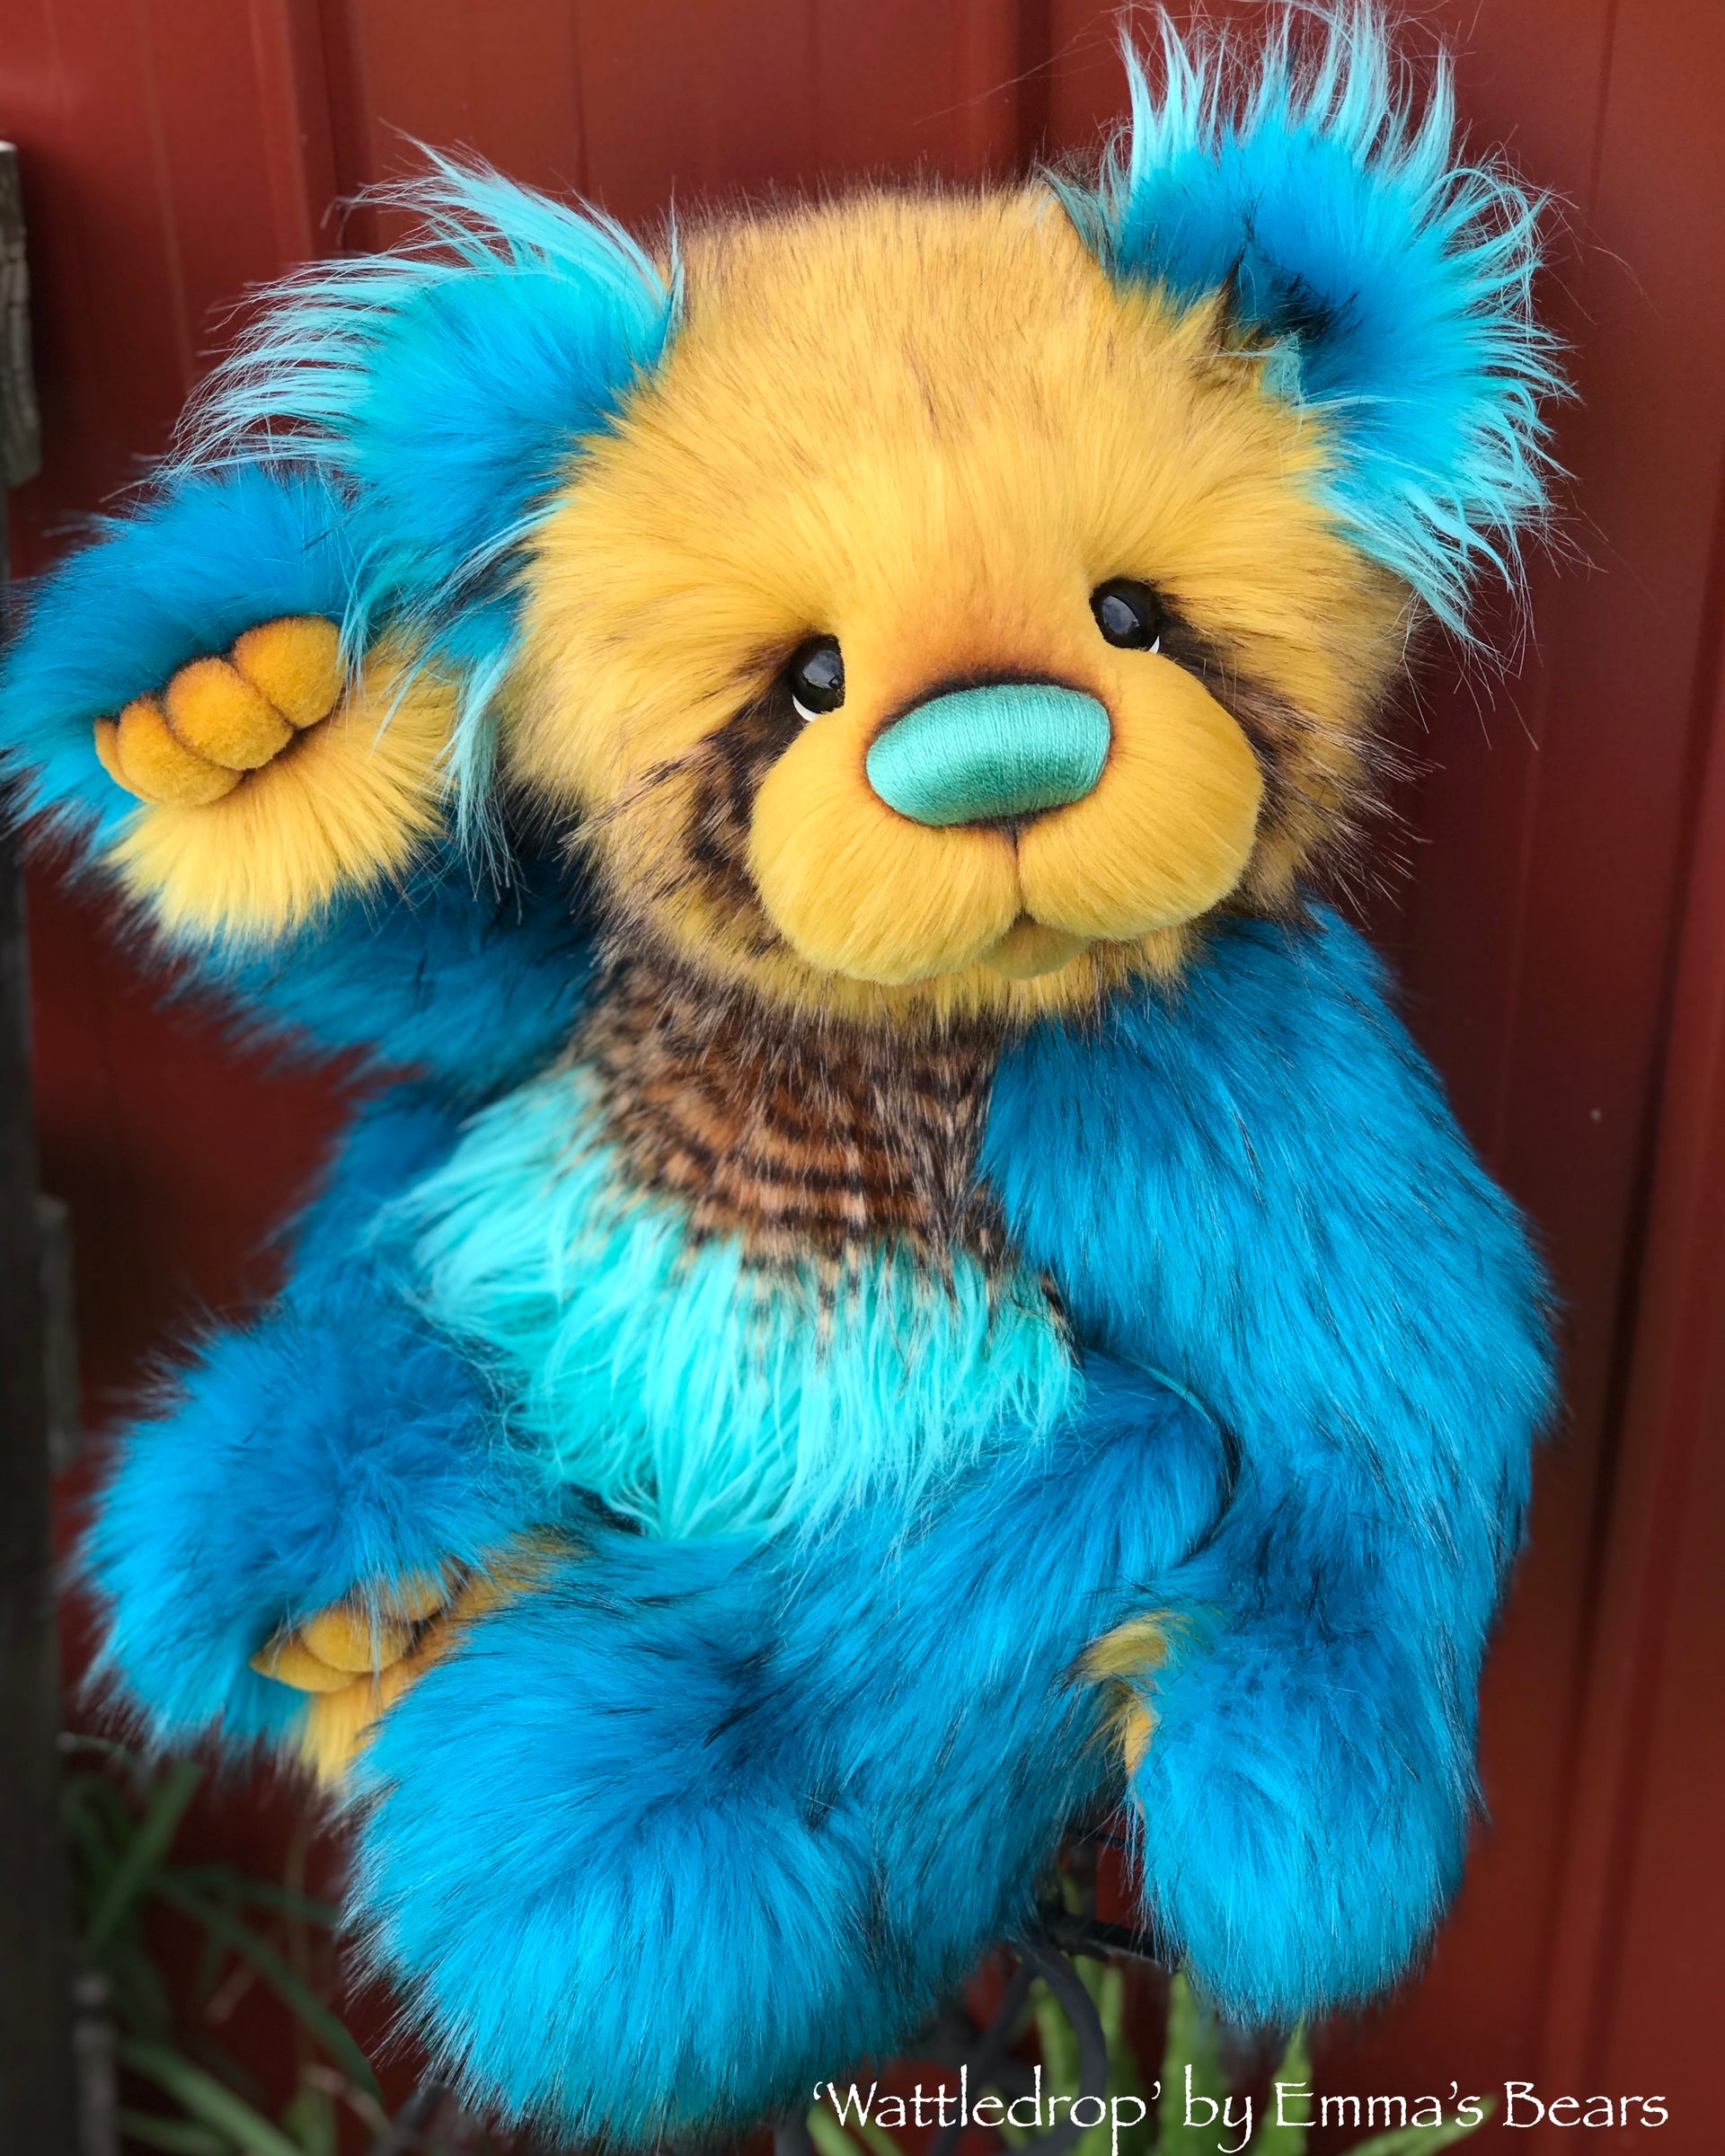 Wattledrop - 24" faux fur bear by Emmas Bears - OOAK